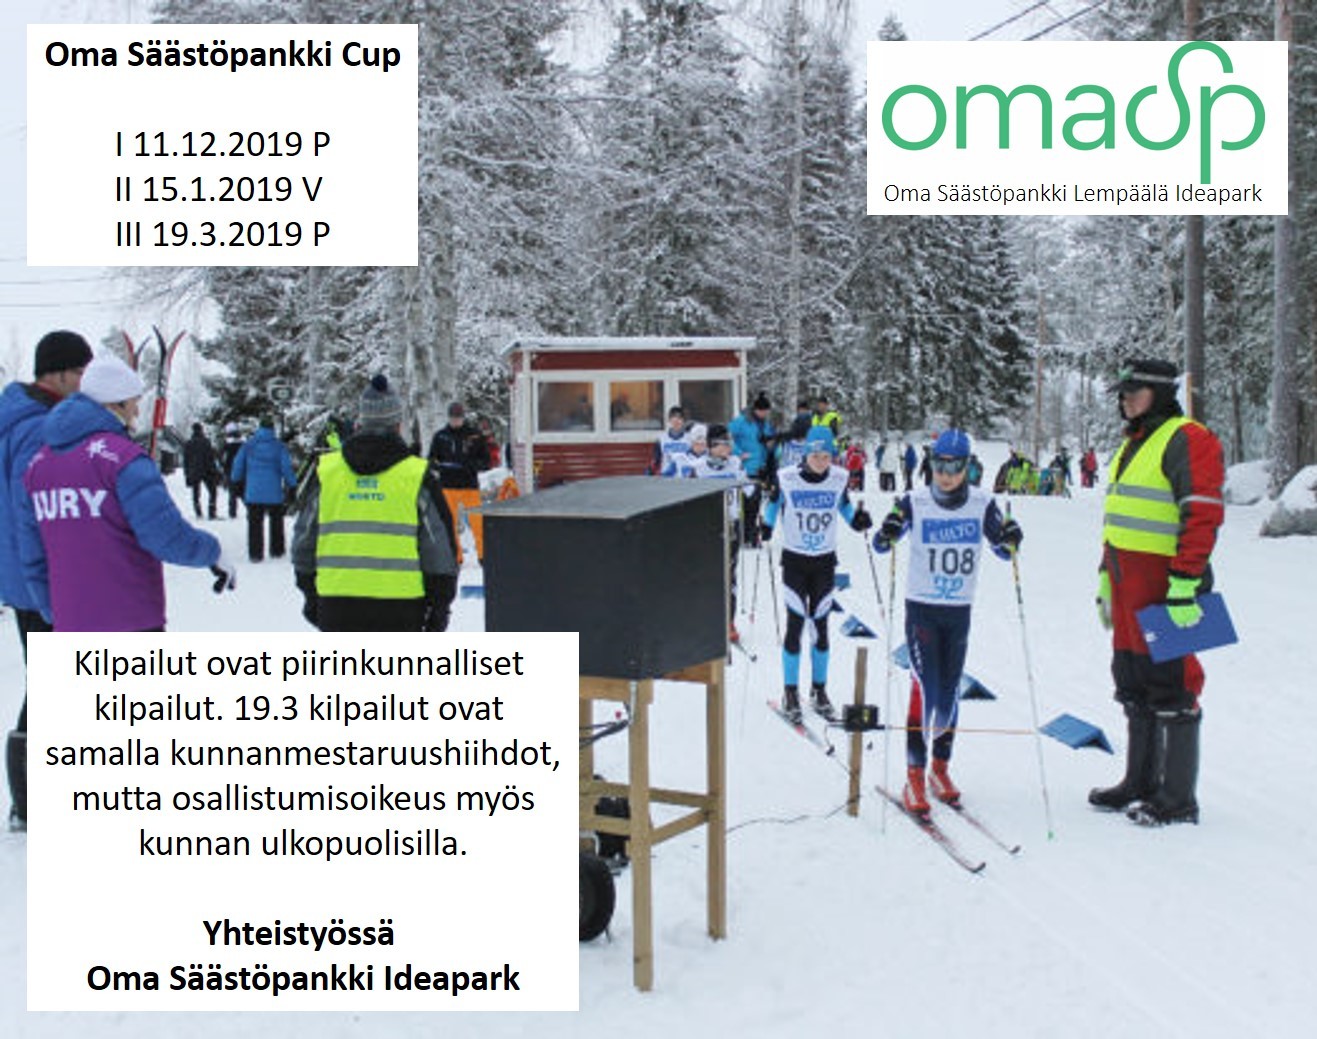 Oma Säästöpankki Cup jatkuu 15.1.2019